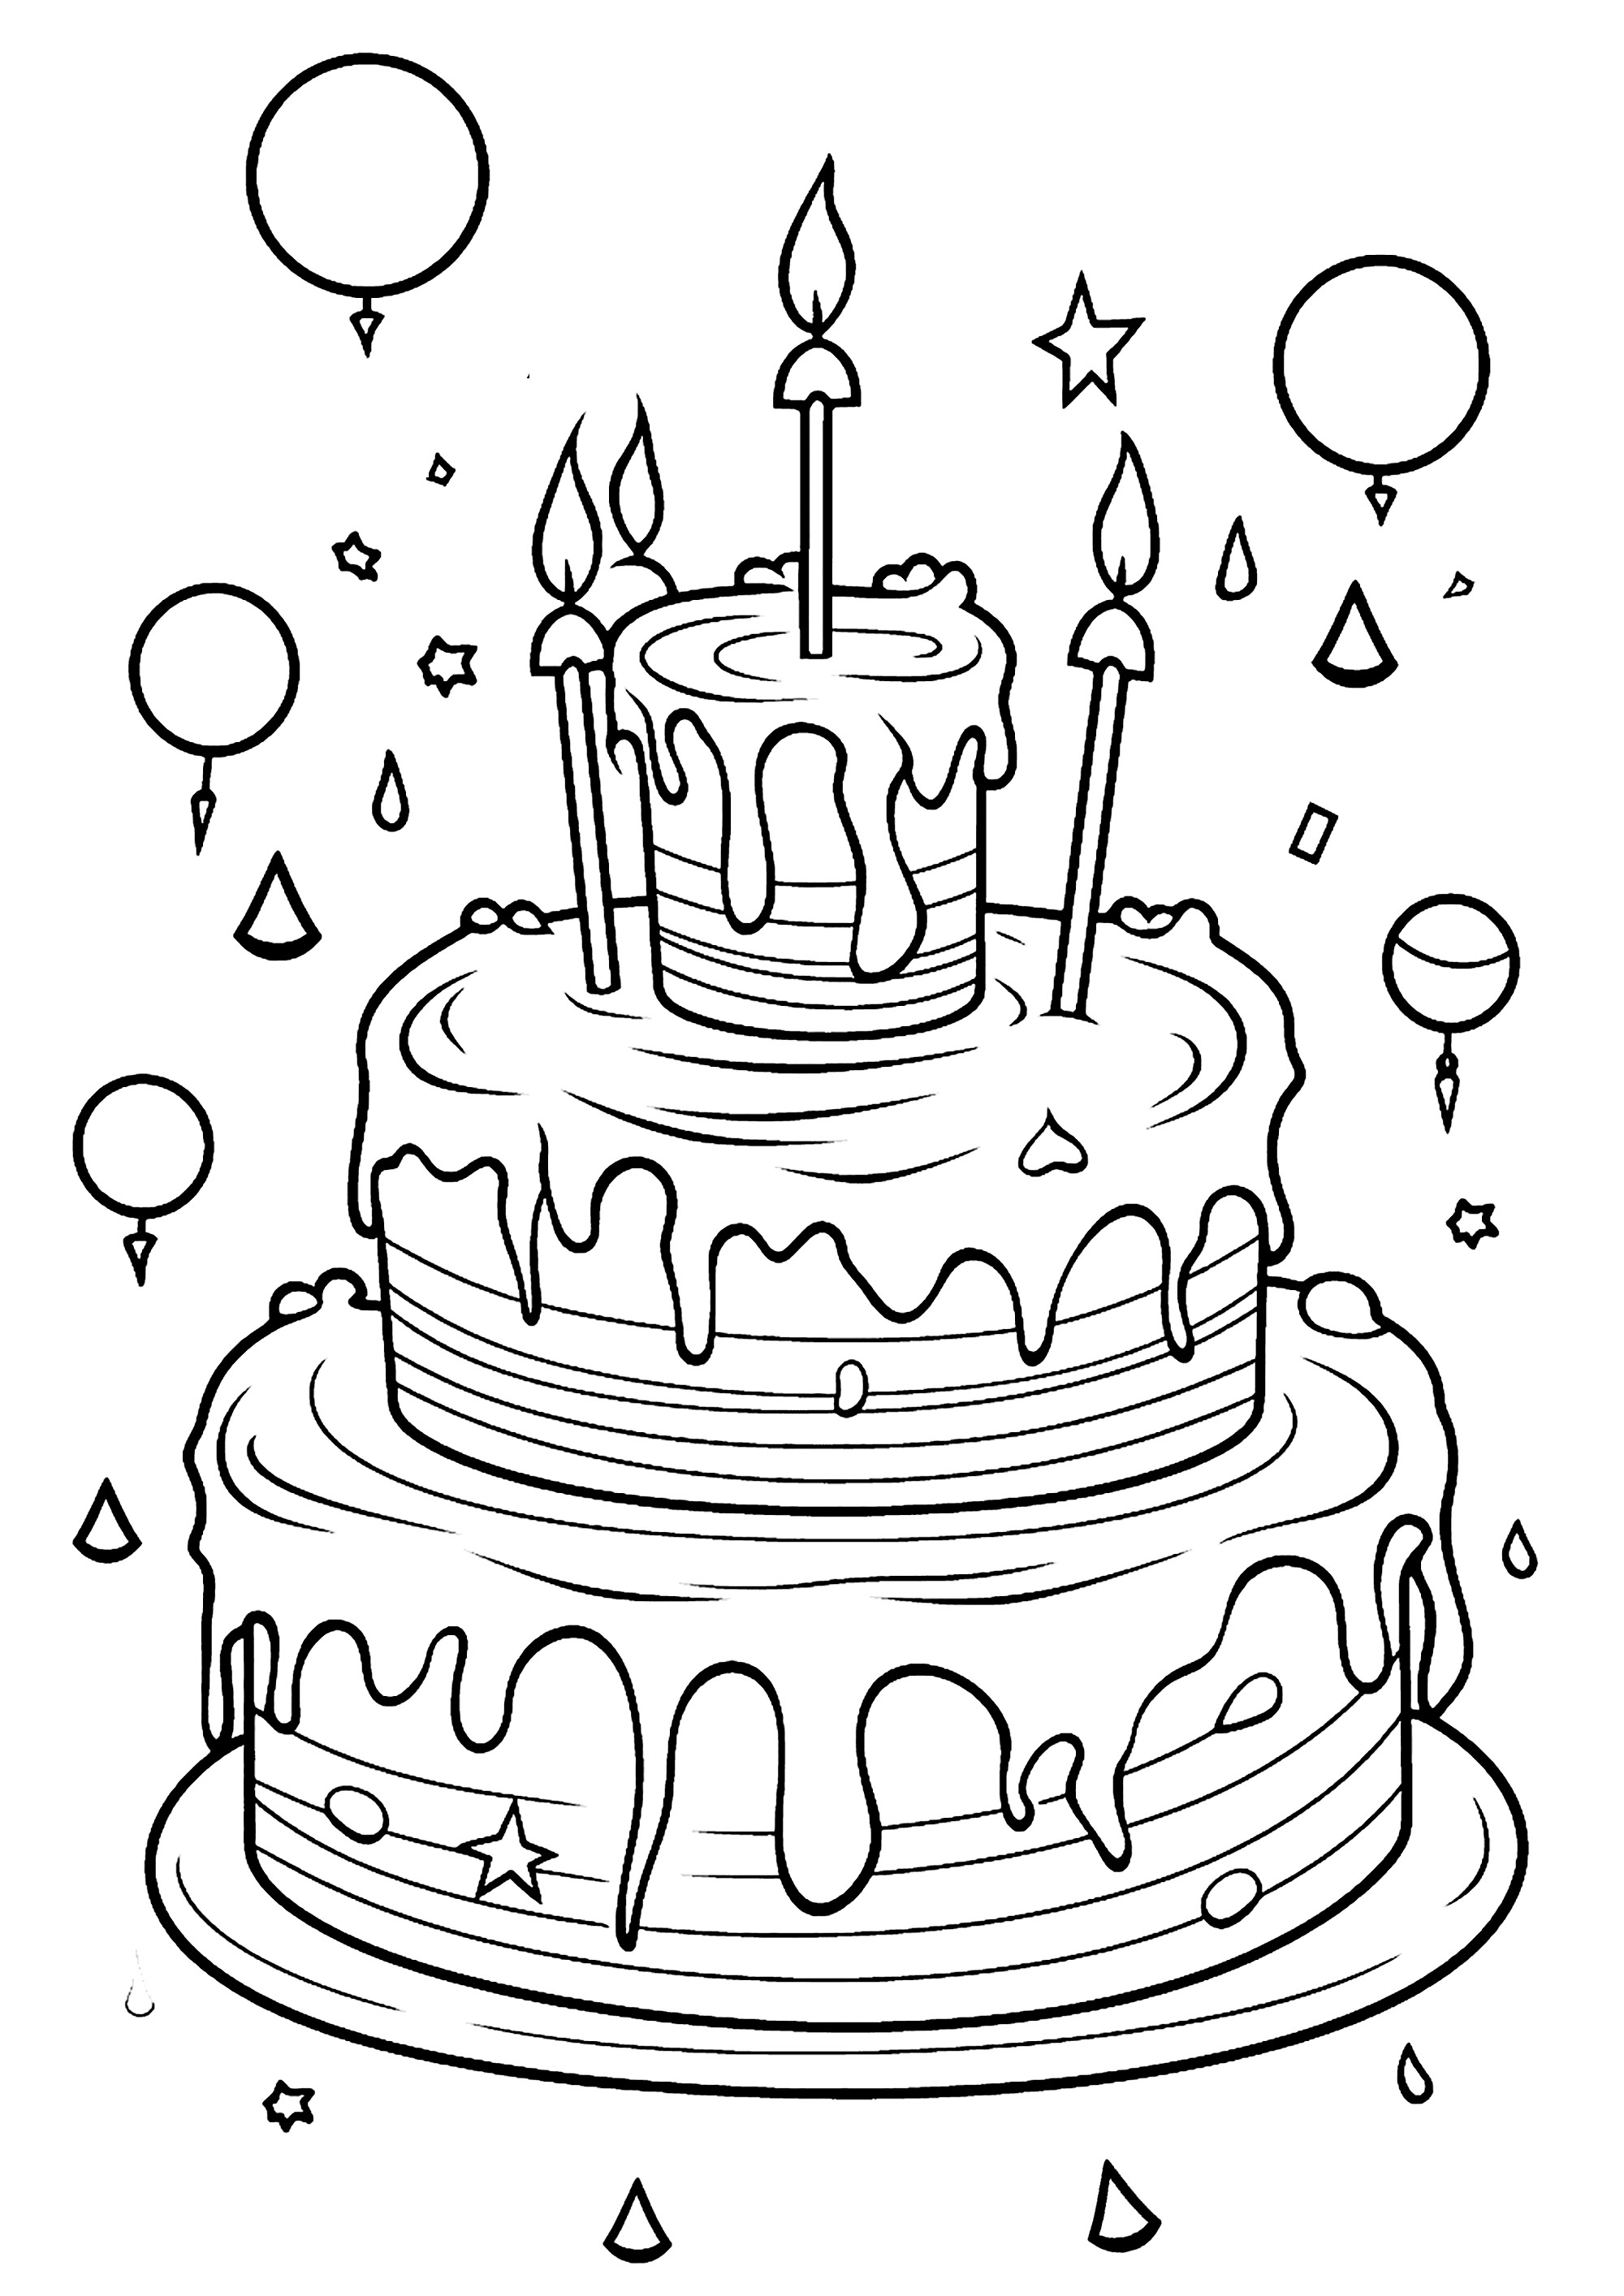 Excelente bolo de aniversário com velas